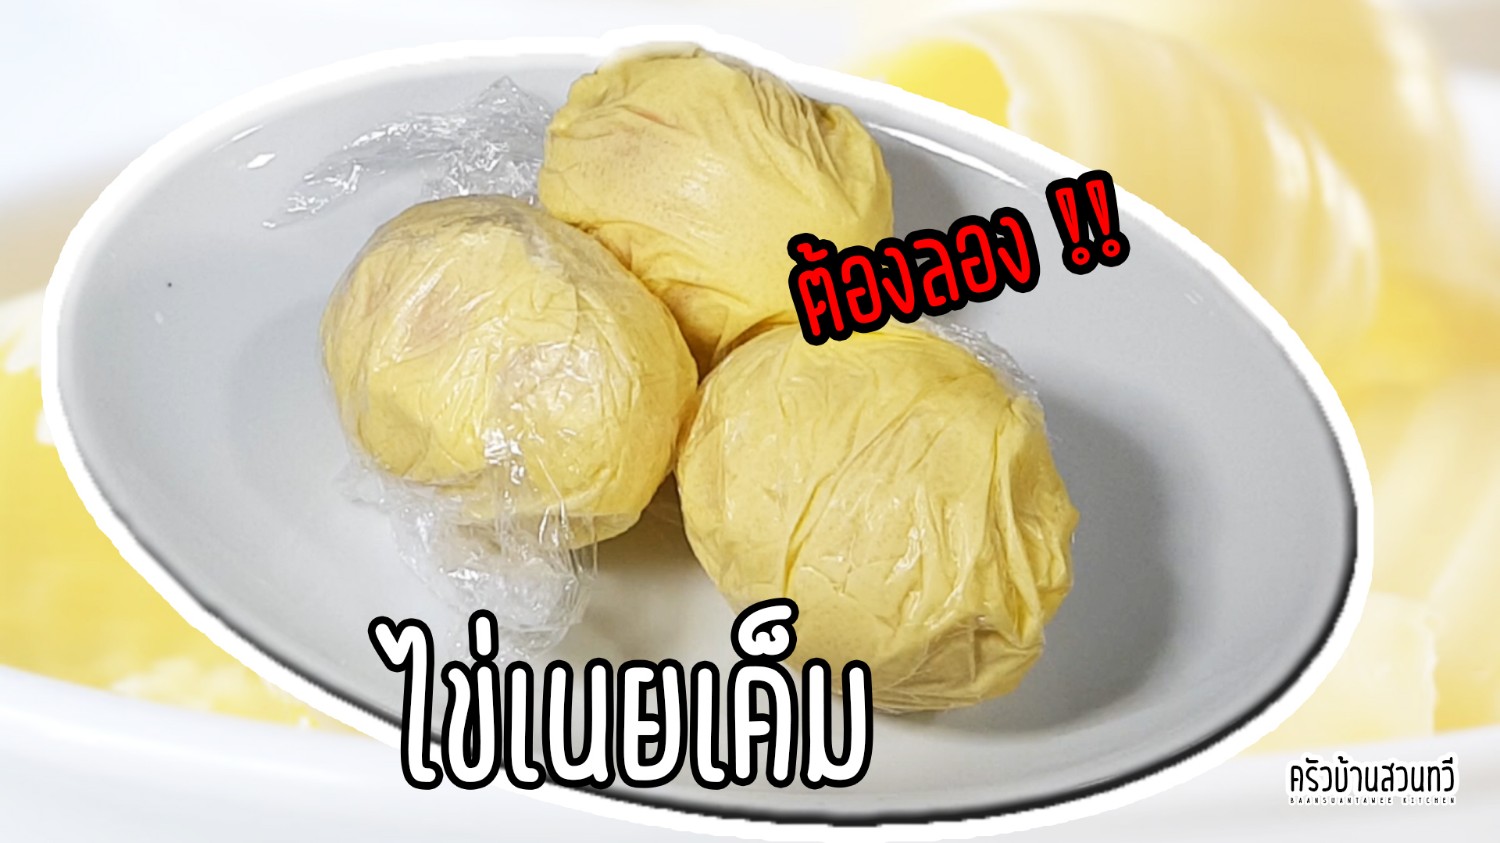 ไข่เนยเค็ม Salt Butter Egg เหตุเกิดจากความสงสัย เลยได้เมนูไข่เค็มแนวใหม่  หอมอร่อยมาก - Pantip